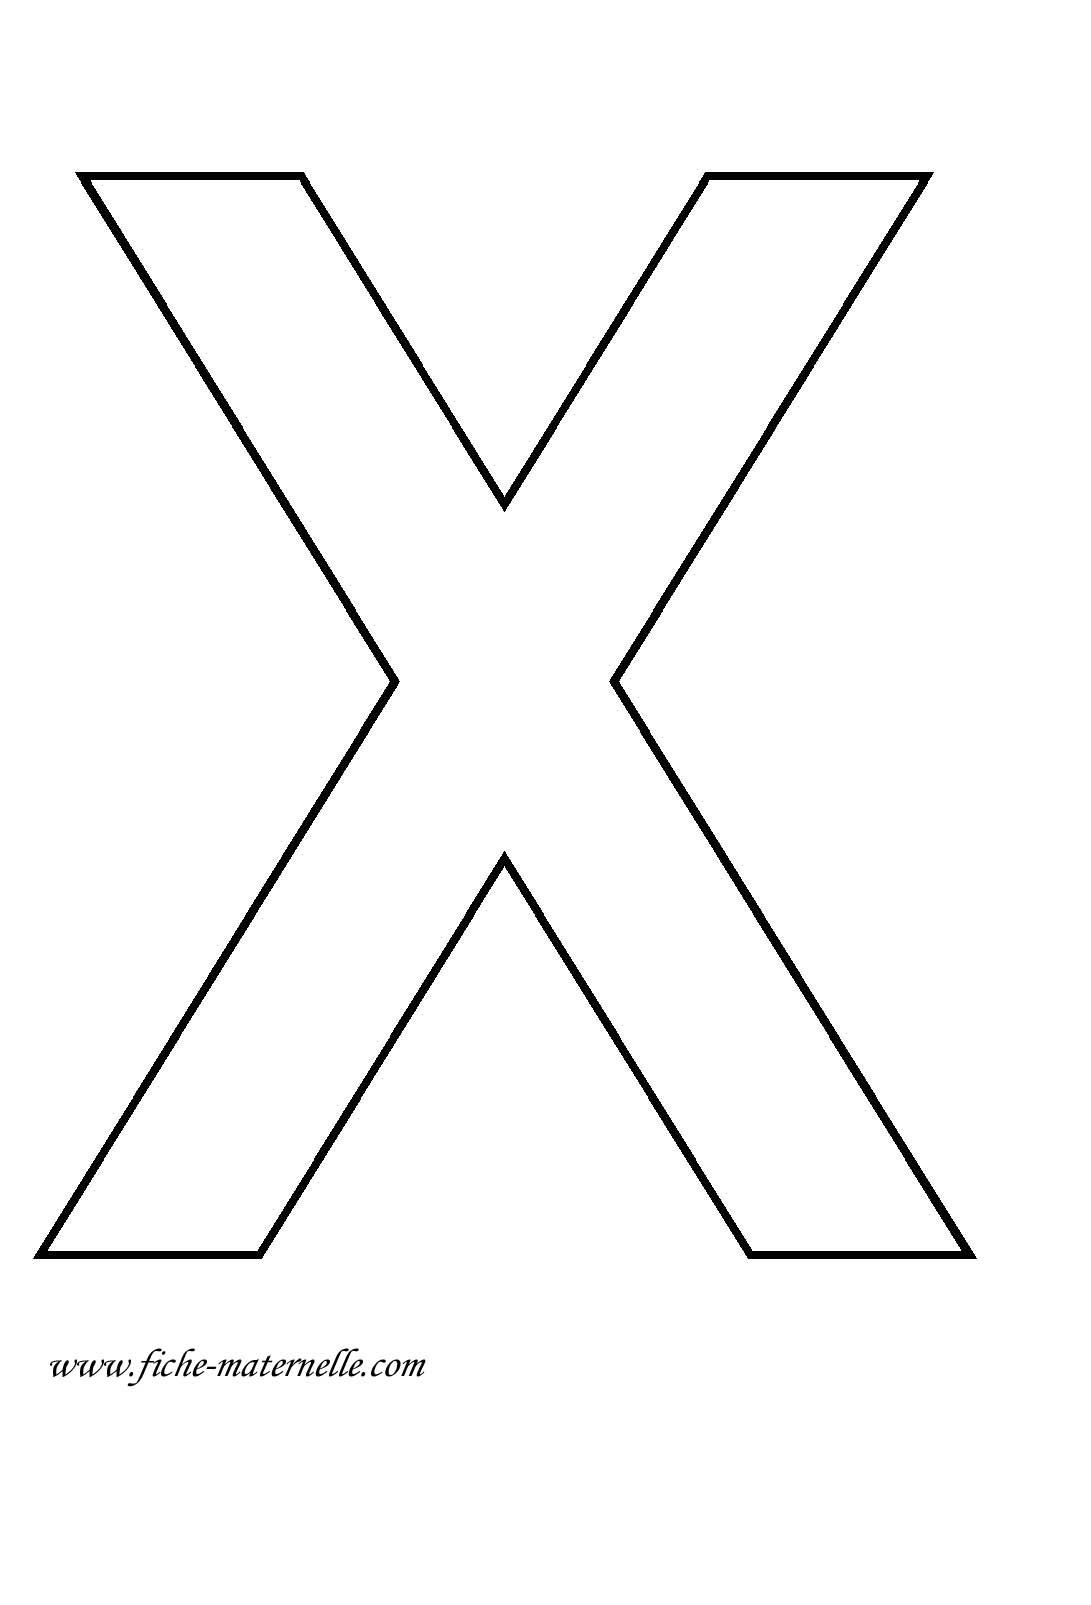 pourquoi la lettre x